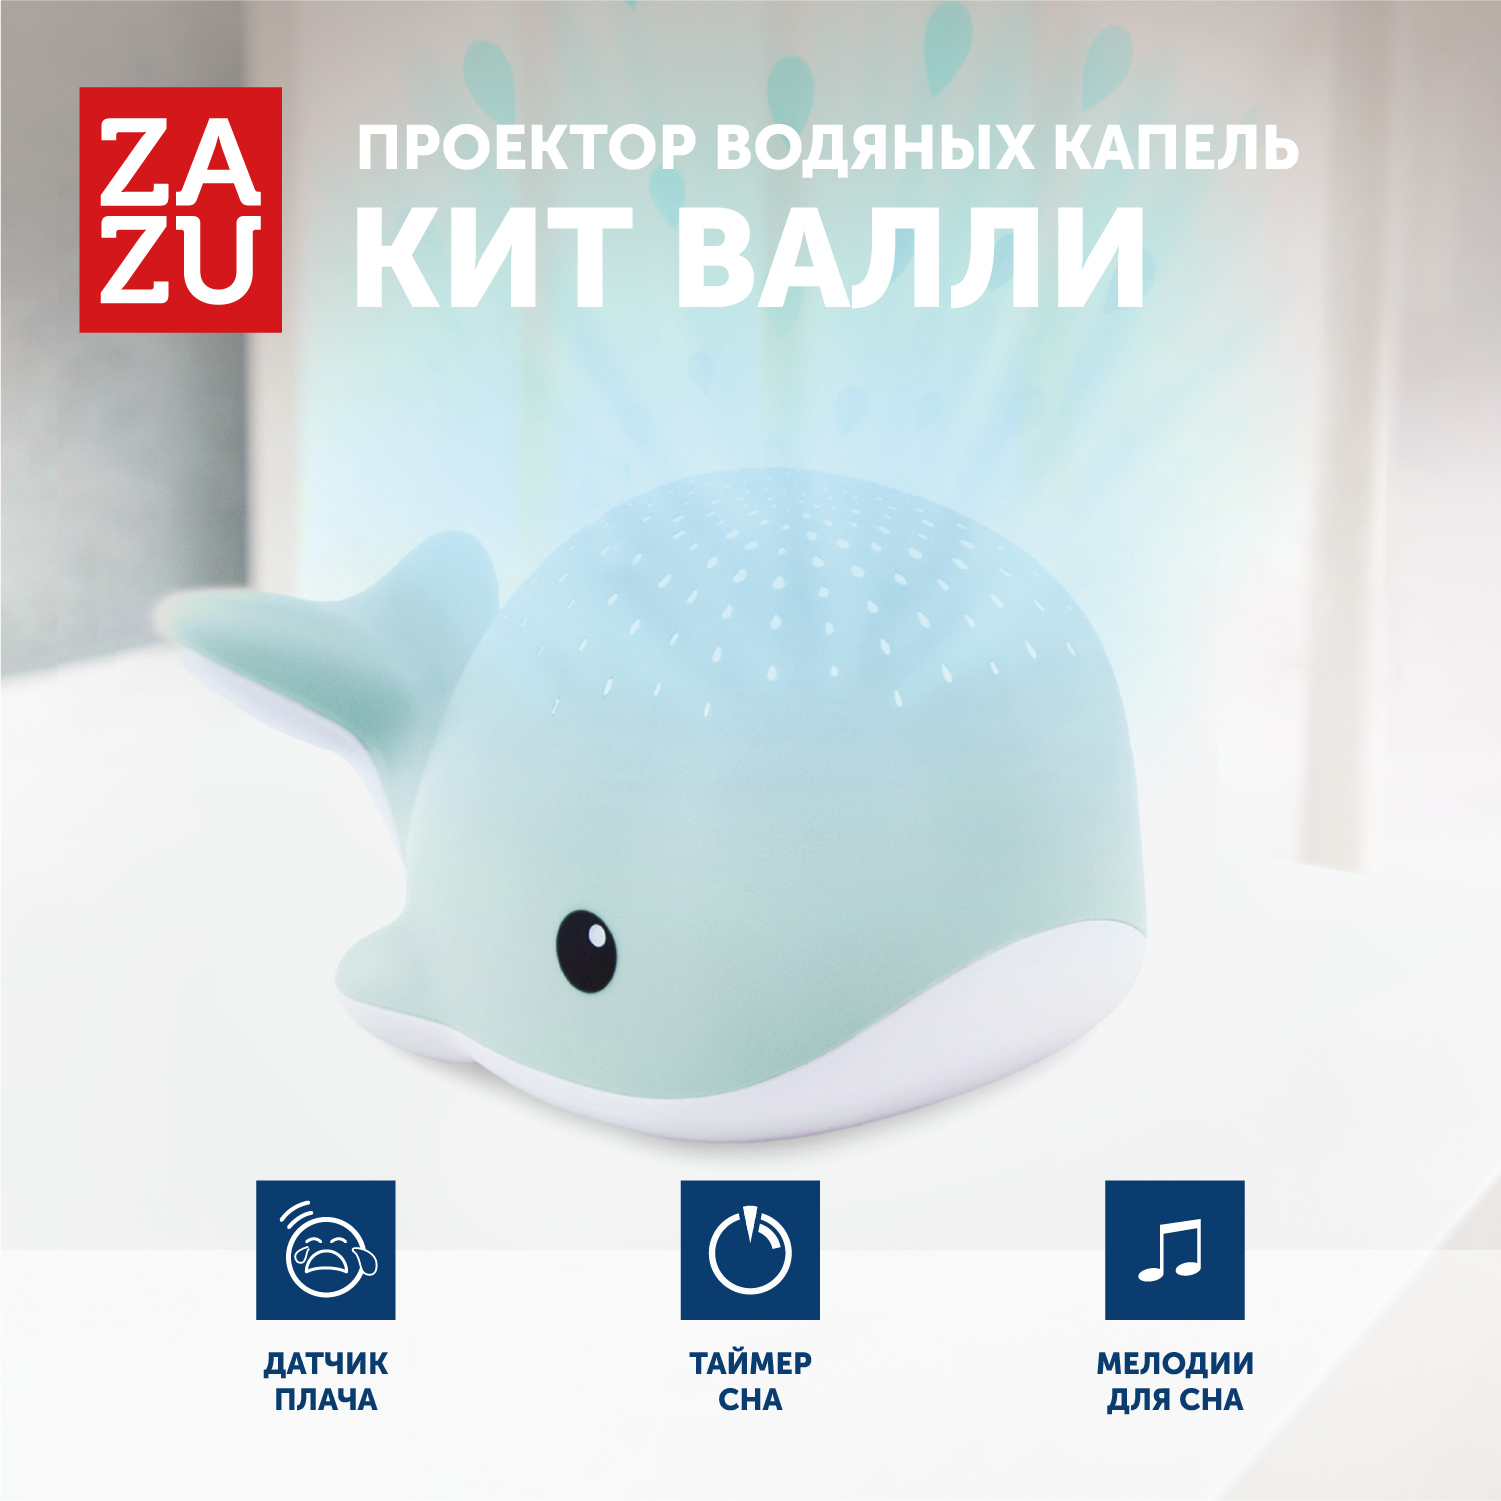 Проектор водяных капель ZAZU Кит za-wally-02 цв. синий